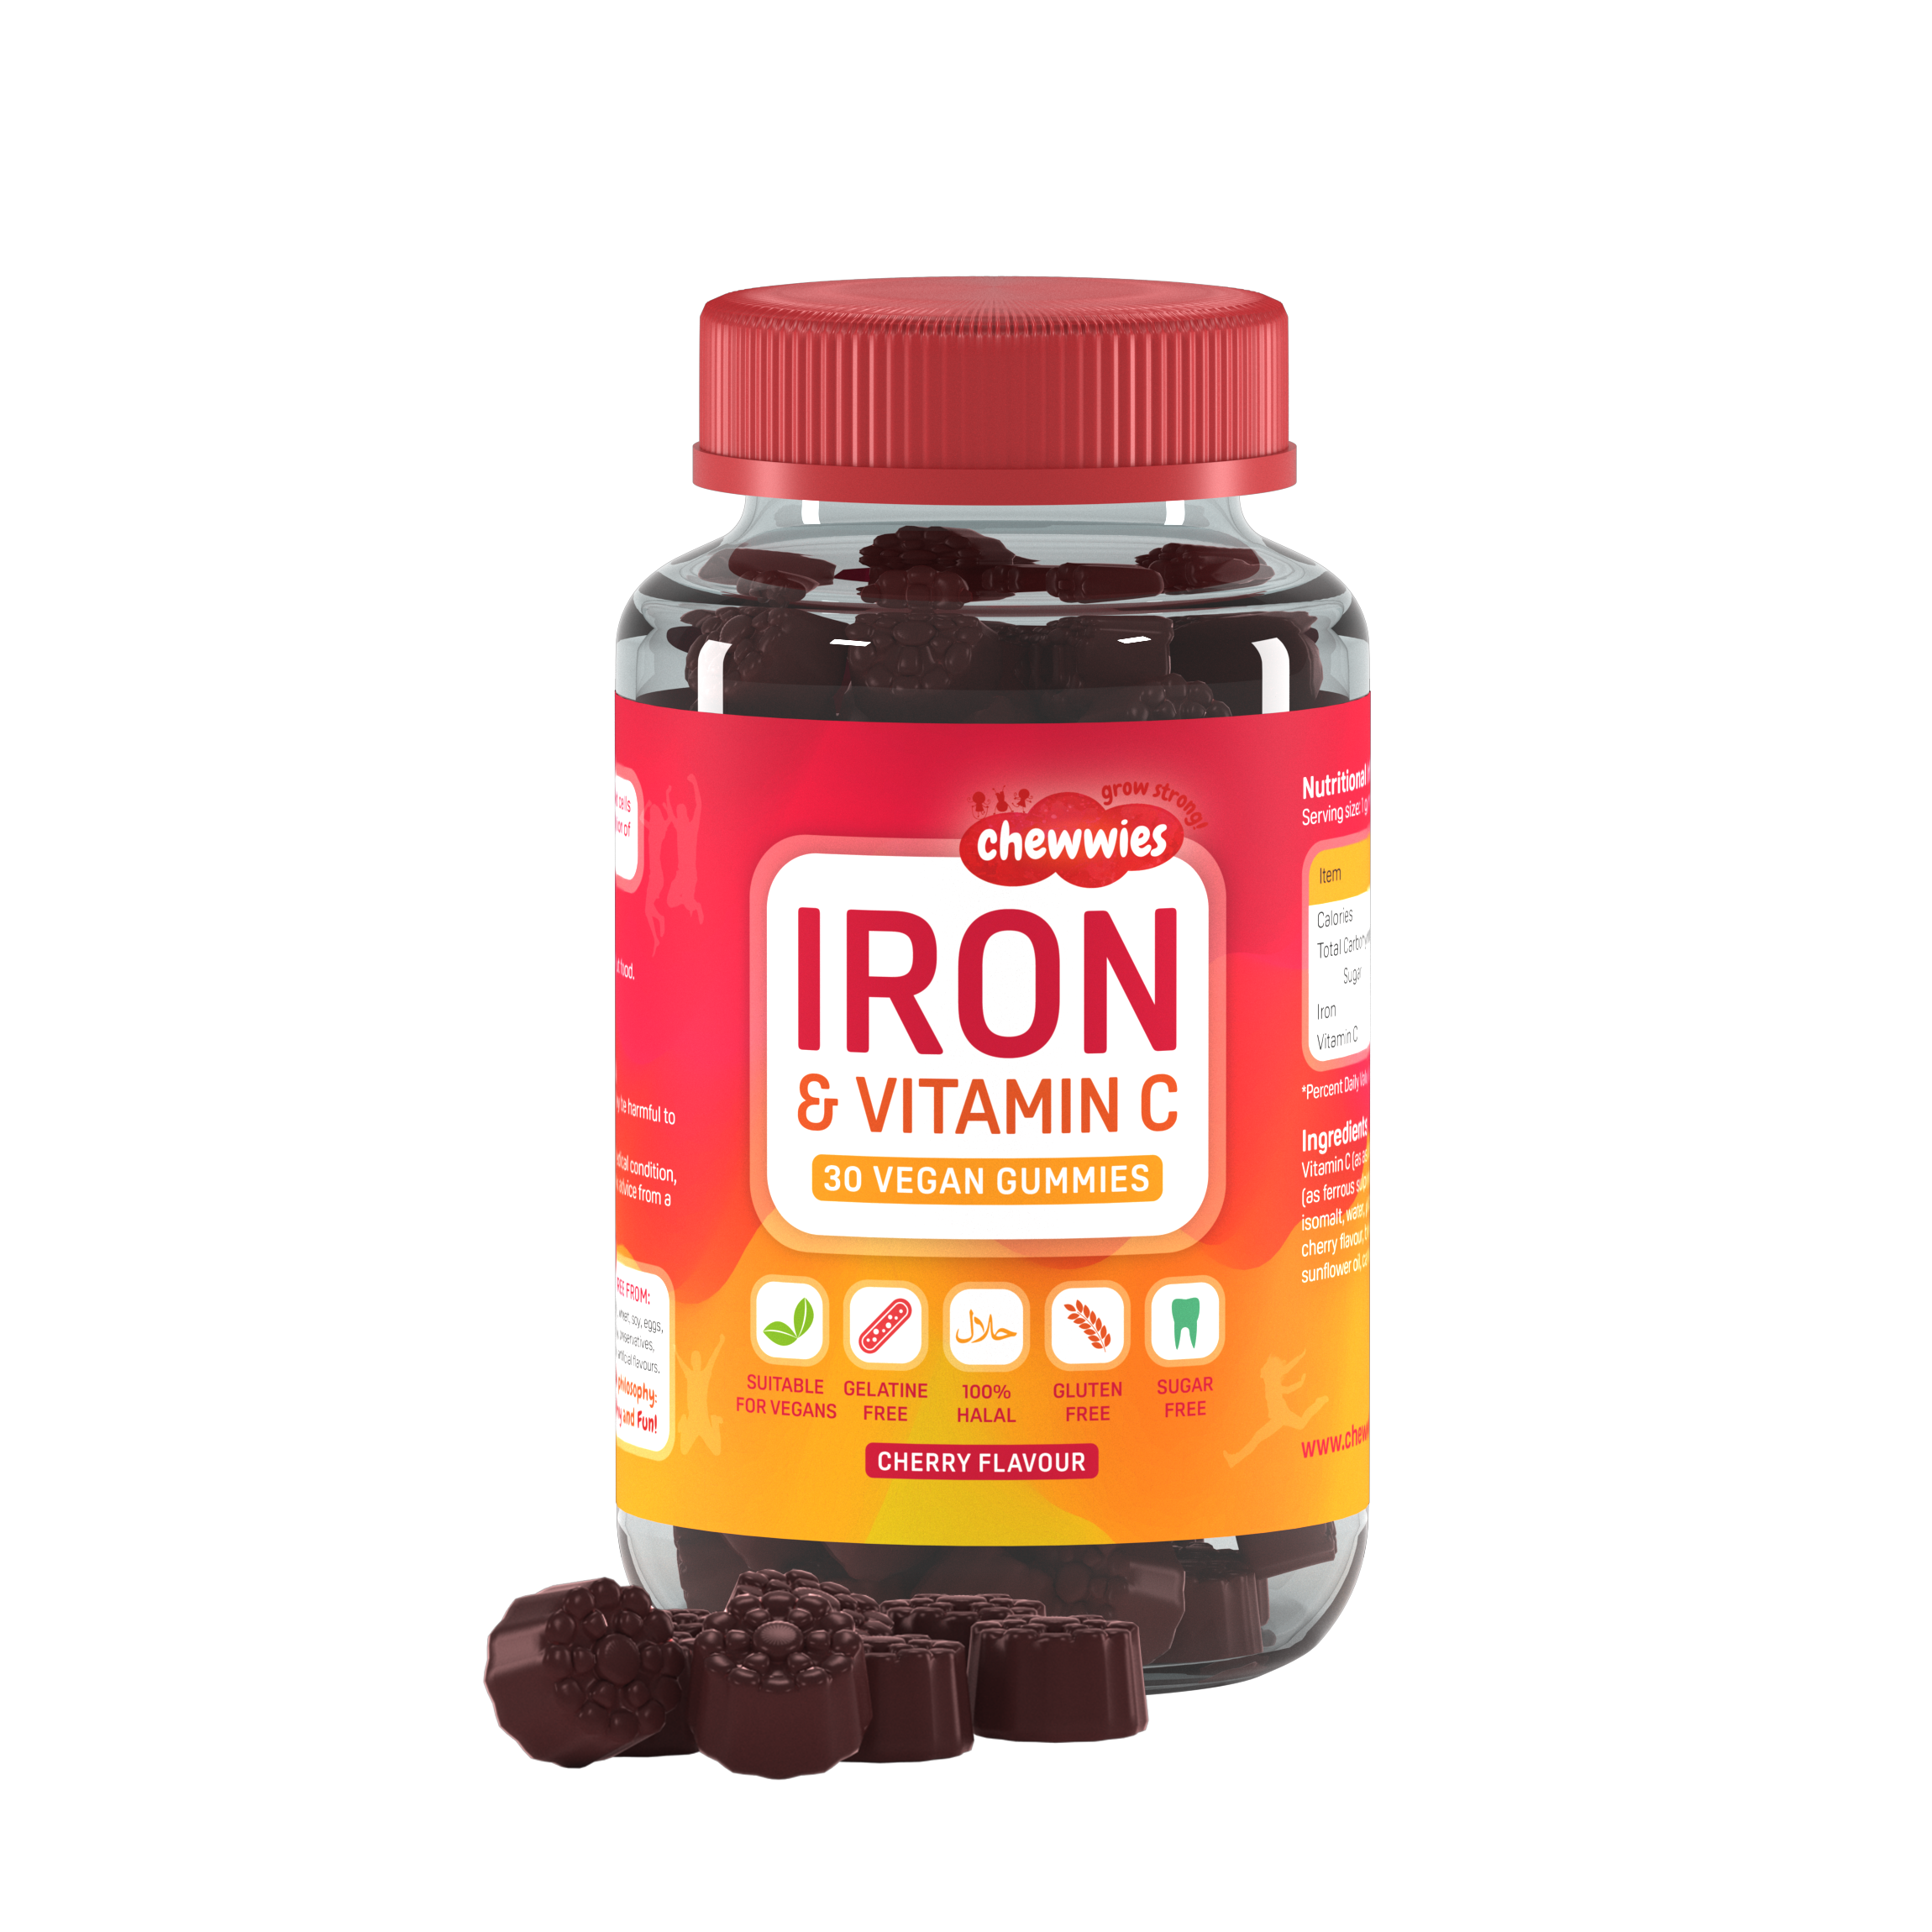 Chewwies Iron & Vitamin C, 30 gommes végétaliennes sans sucre à saveur de cerise pour l'énergie et la réduction de la fatigue et de l'épuisement